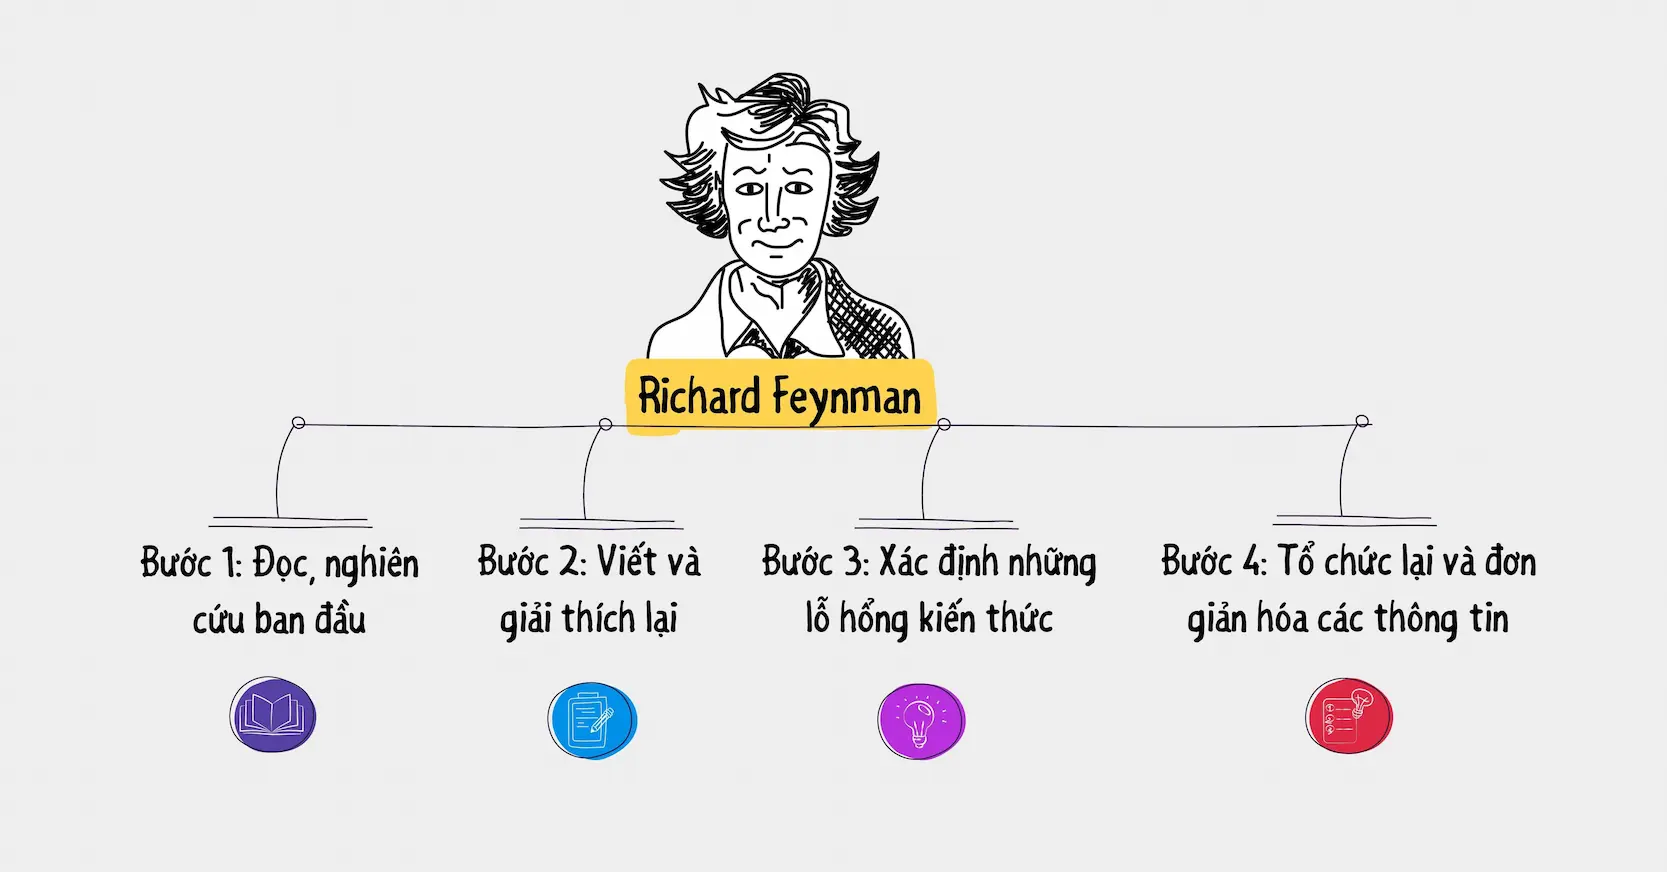 Kỹ thuật Feynman là gì?